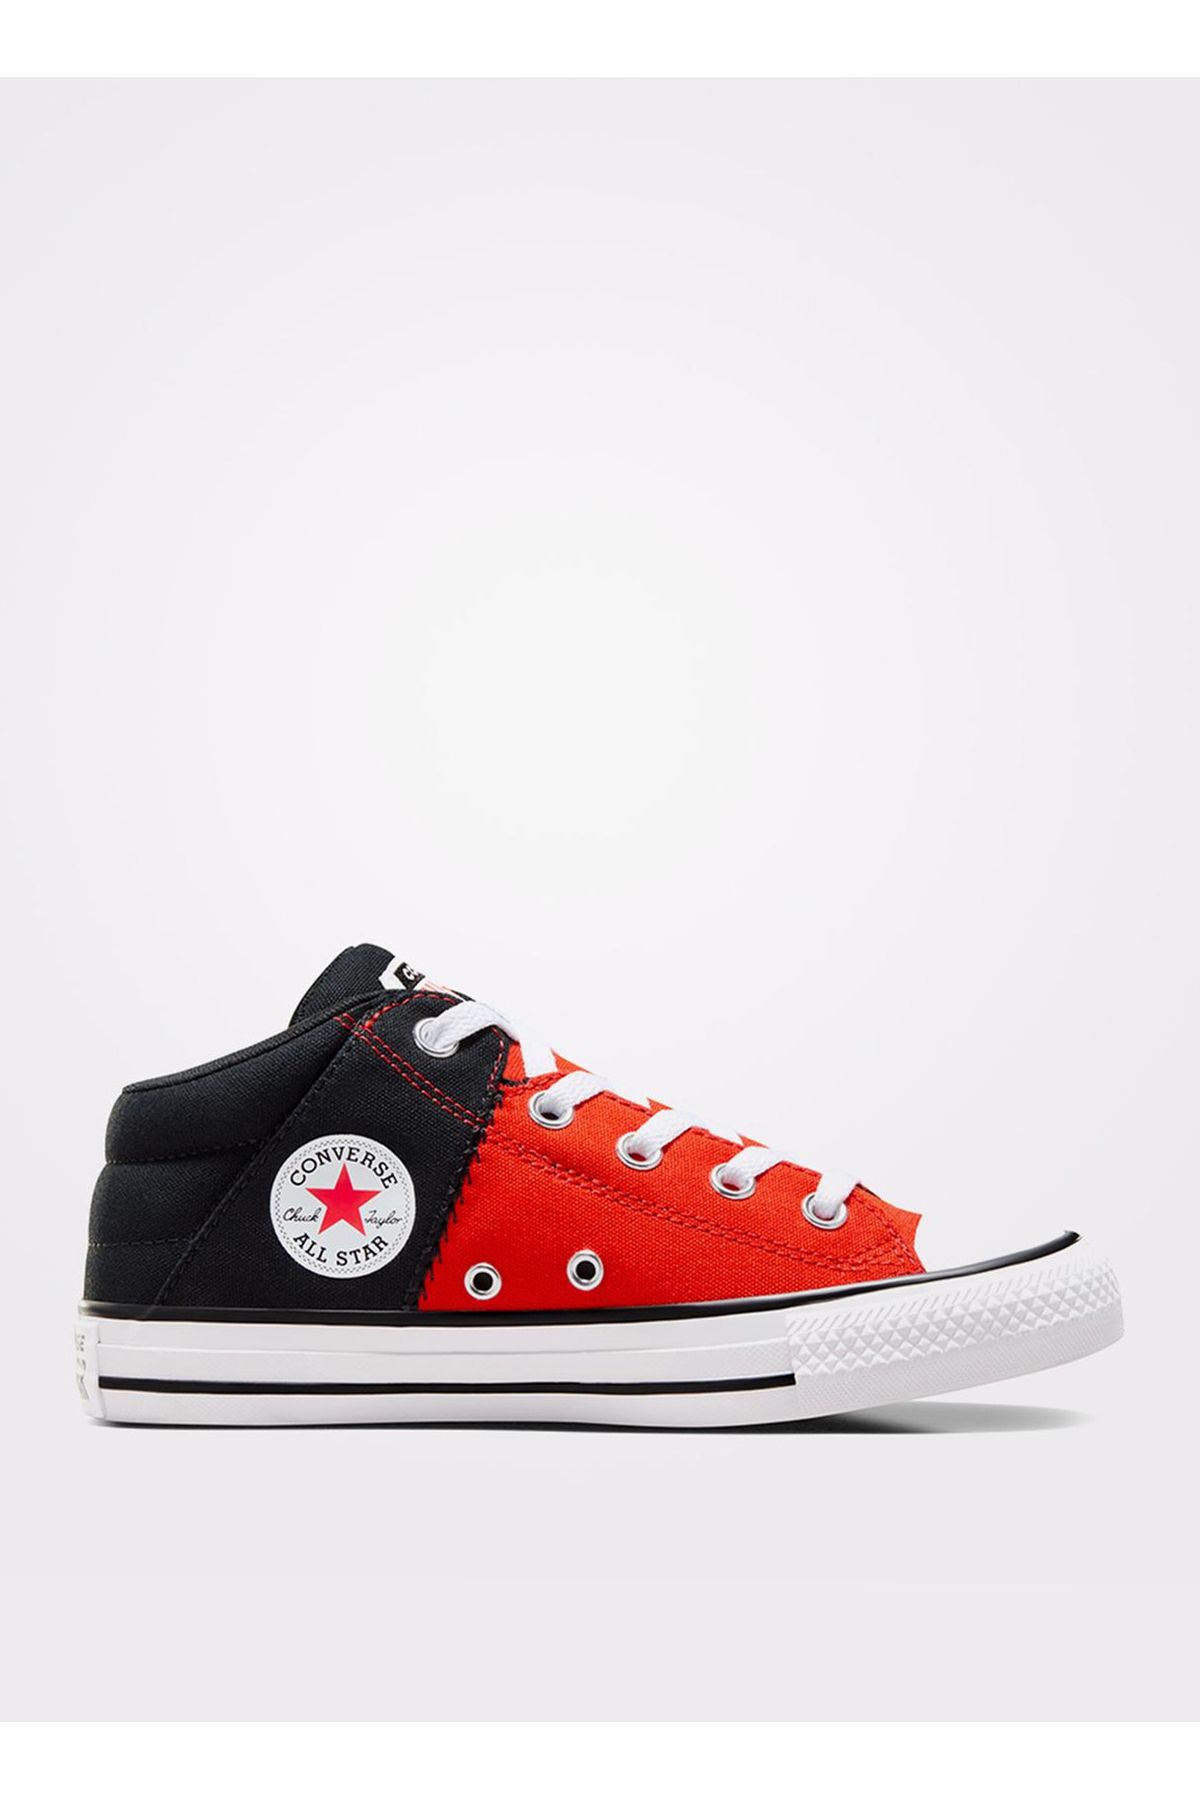 Converse Siyah - Kırmızı Erkek Yürüyüş Ayakkabısı A06370C.671-CHUCK TAYLOR ALL STAR